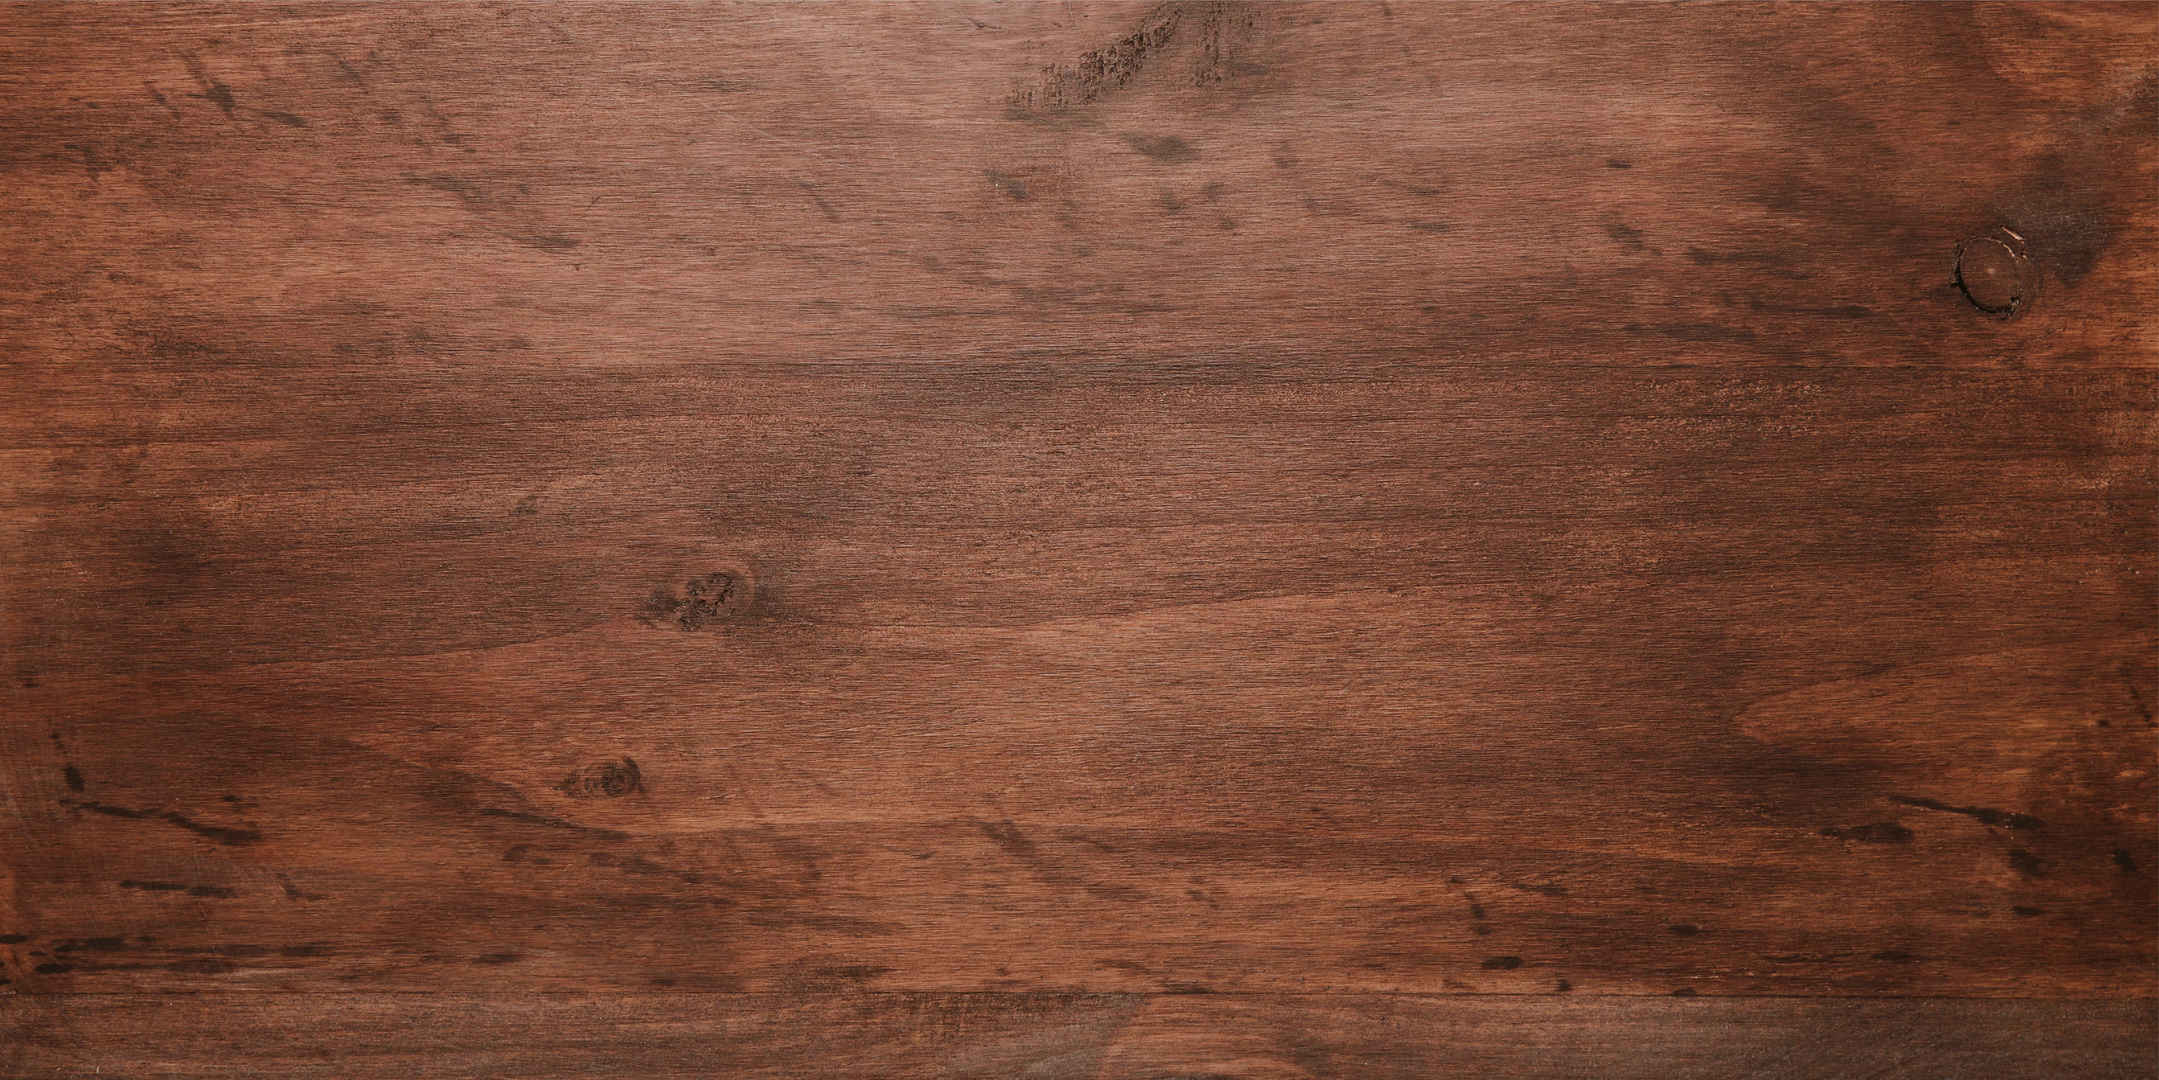 棕色木质纹理背景素材